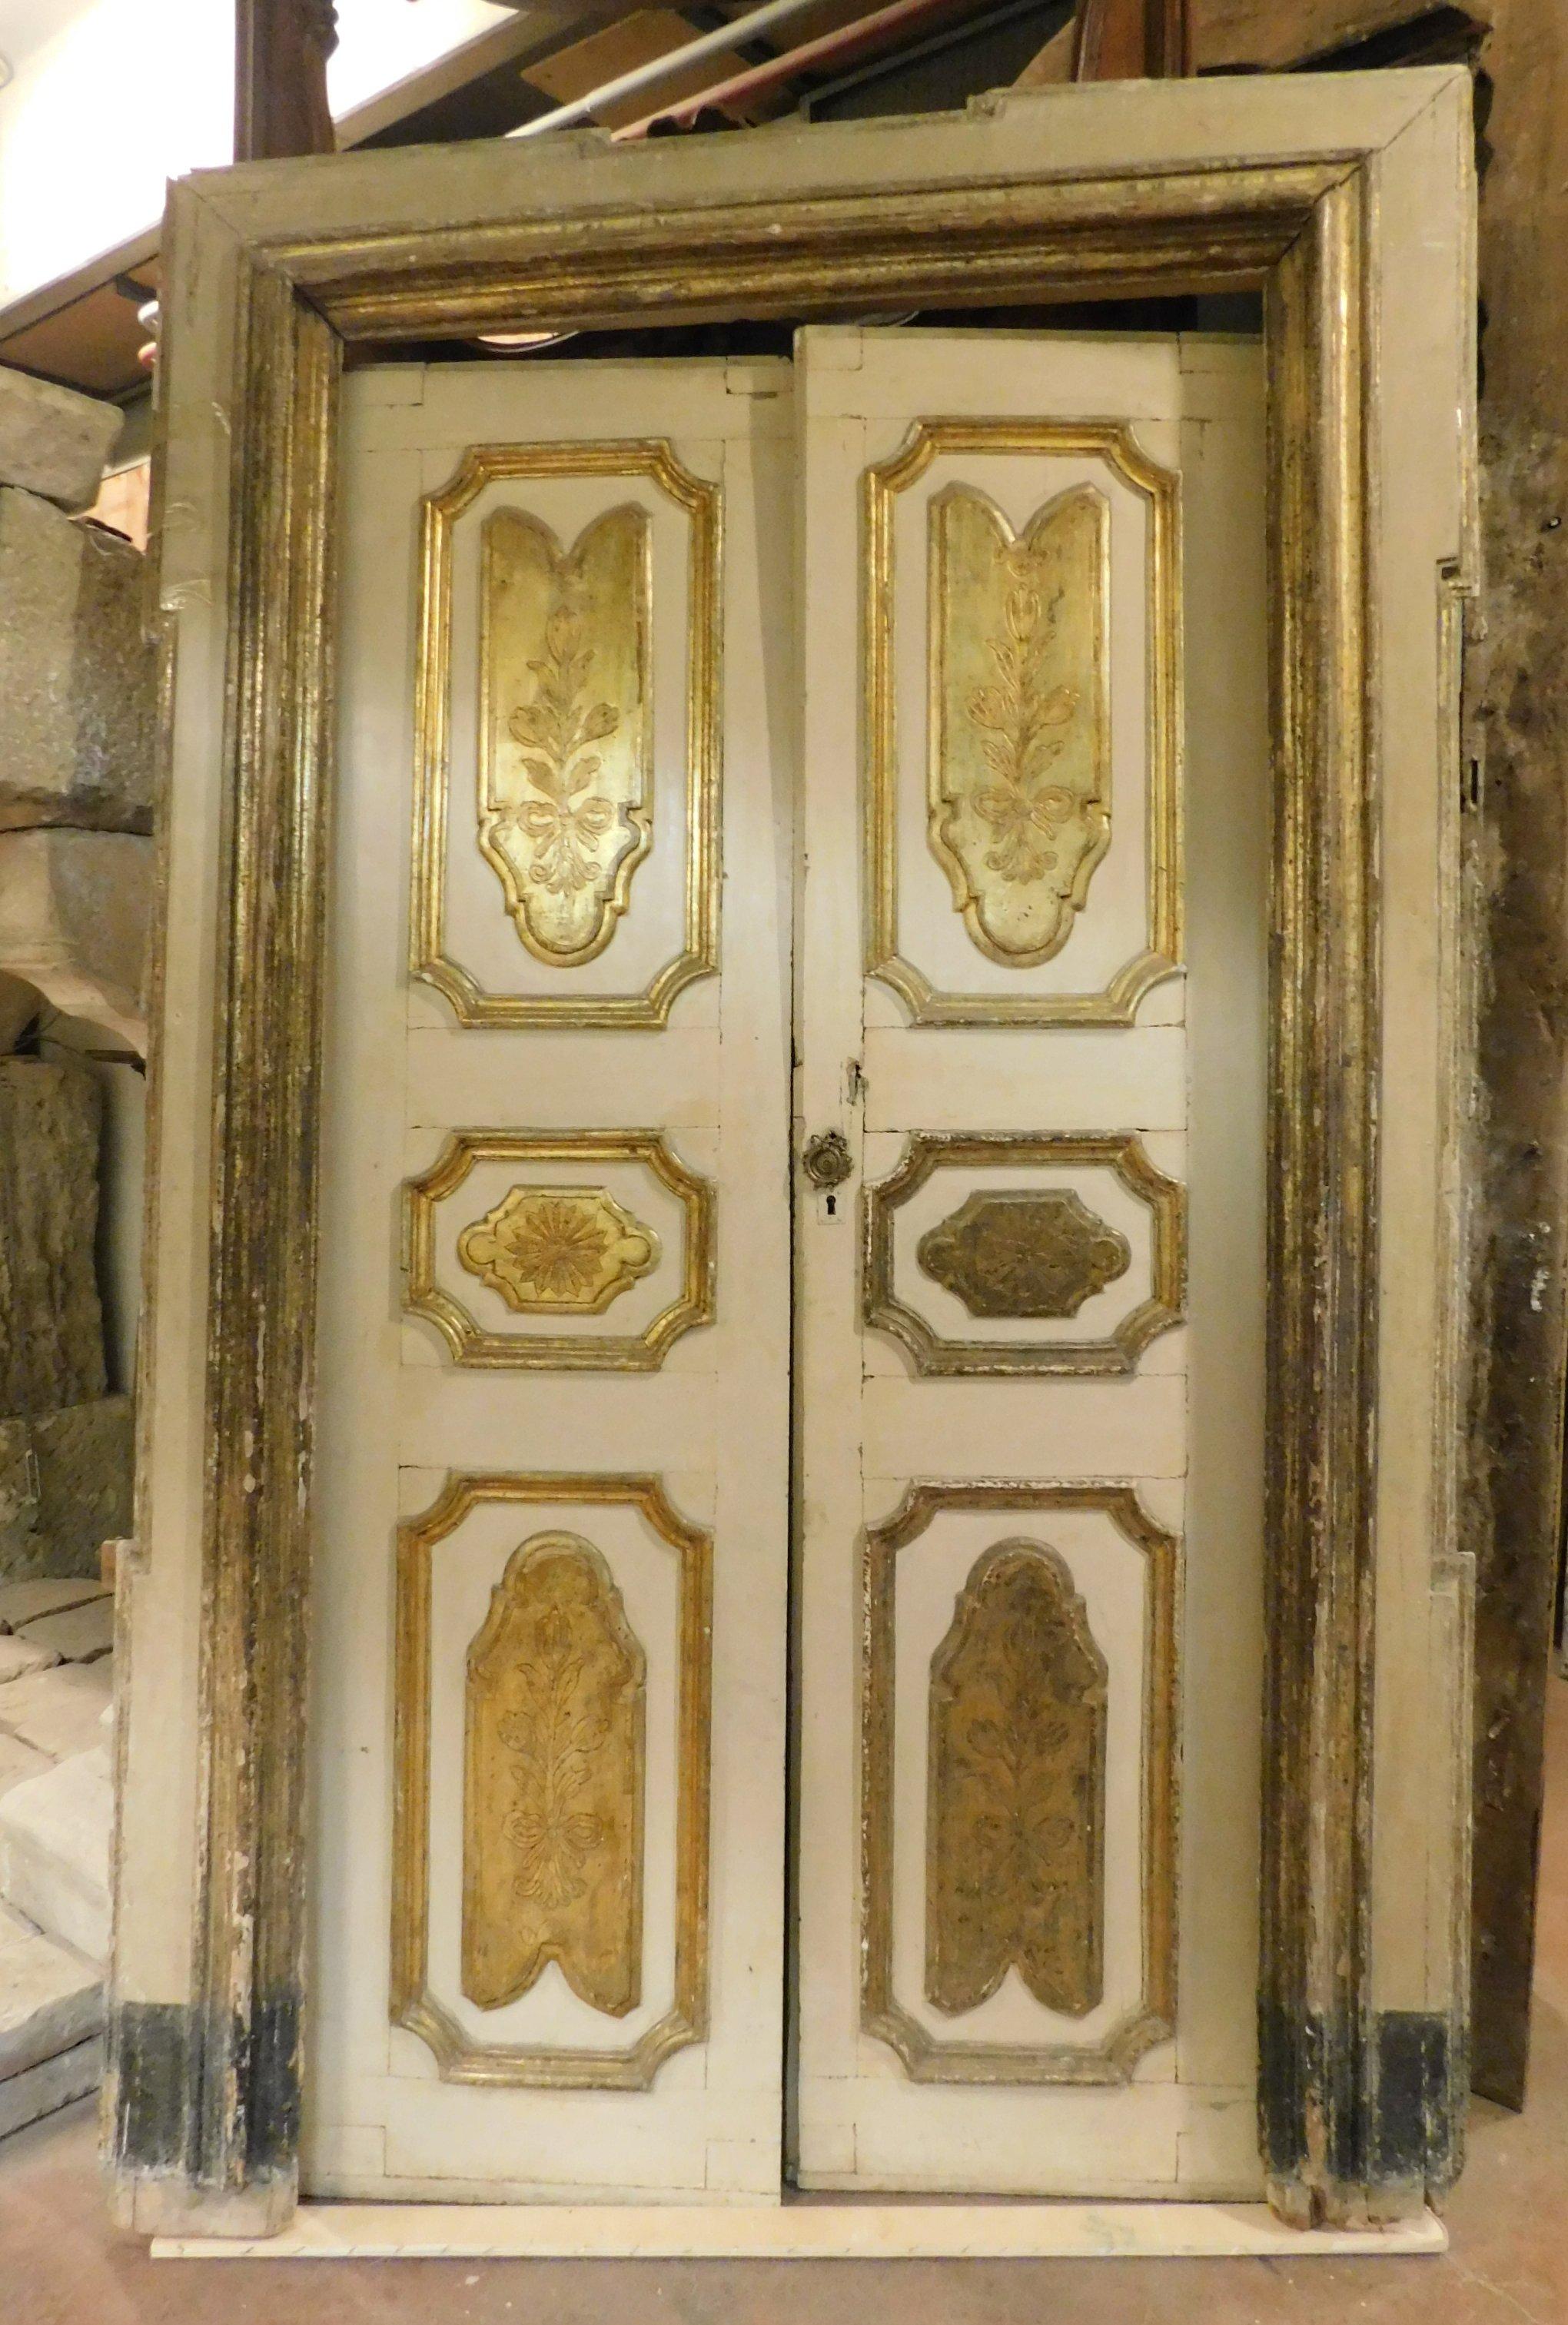 18th century door